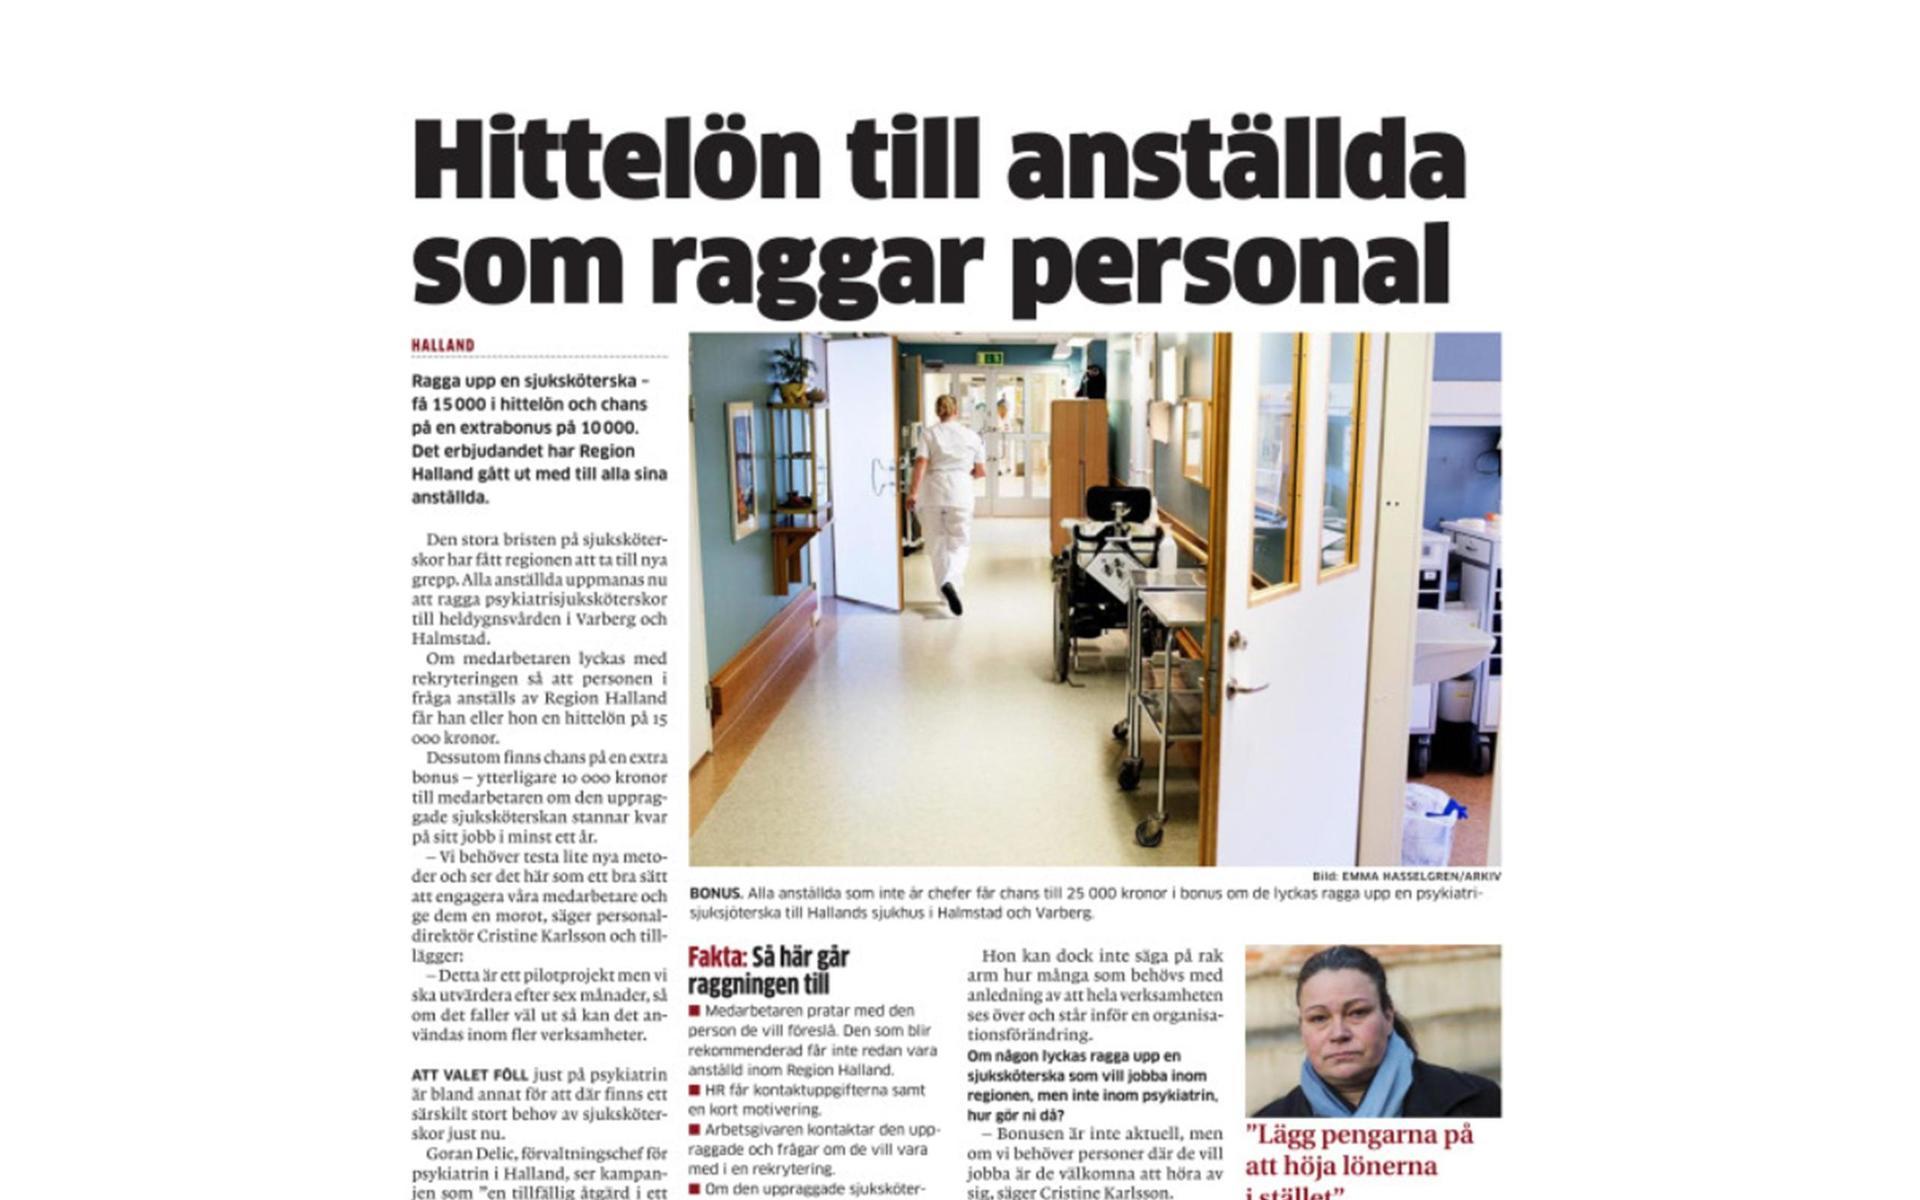 HP skrev också att: ”Alla anställda på Region Halland får 15 000 i hittelön om de raggar en sjuksköterska till psykiatrin”. Den stora bristen på sjuksköterskor låg bakom jakten.